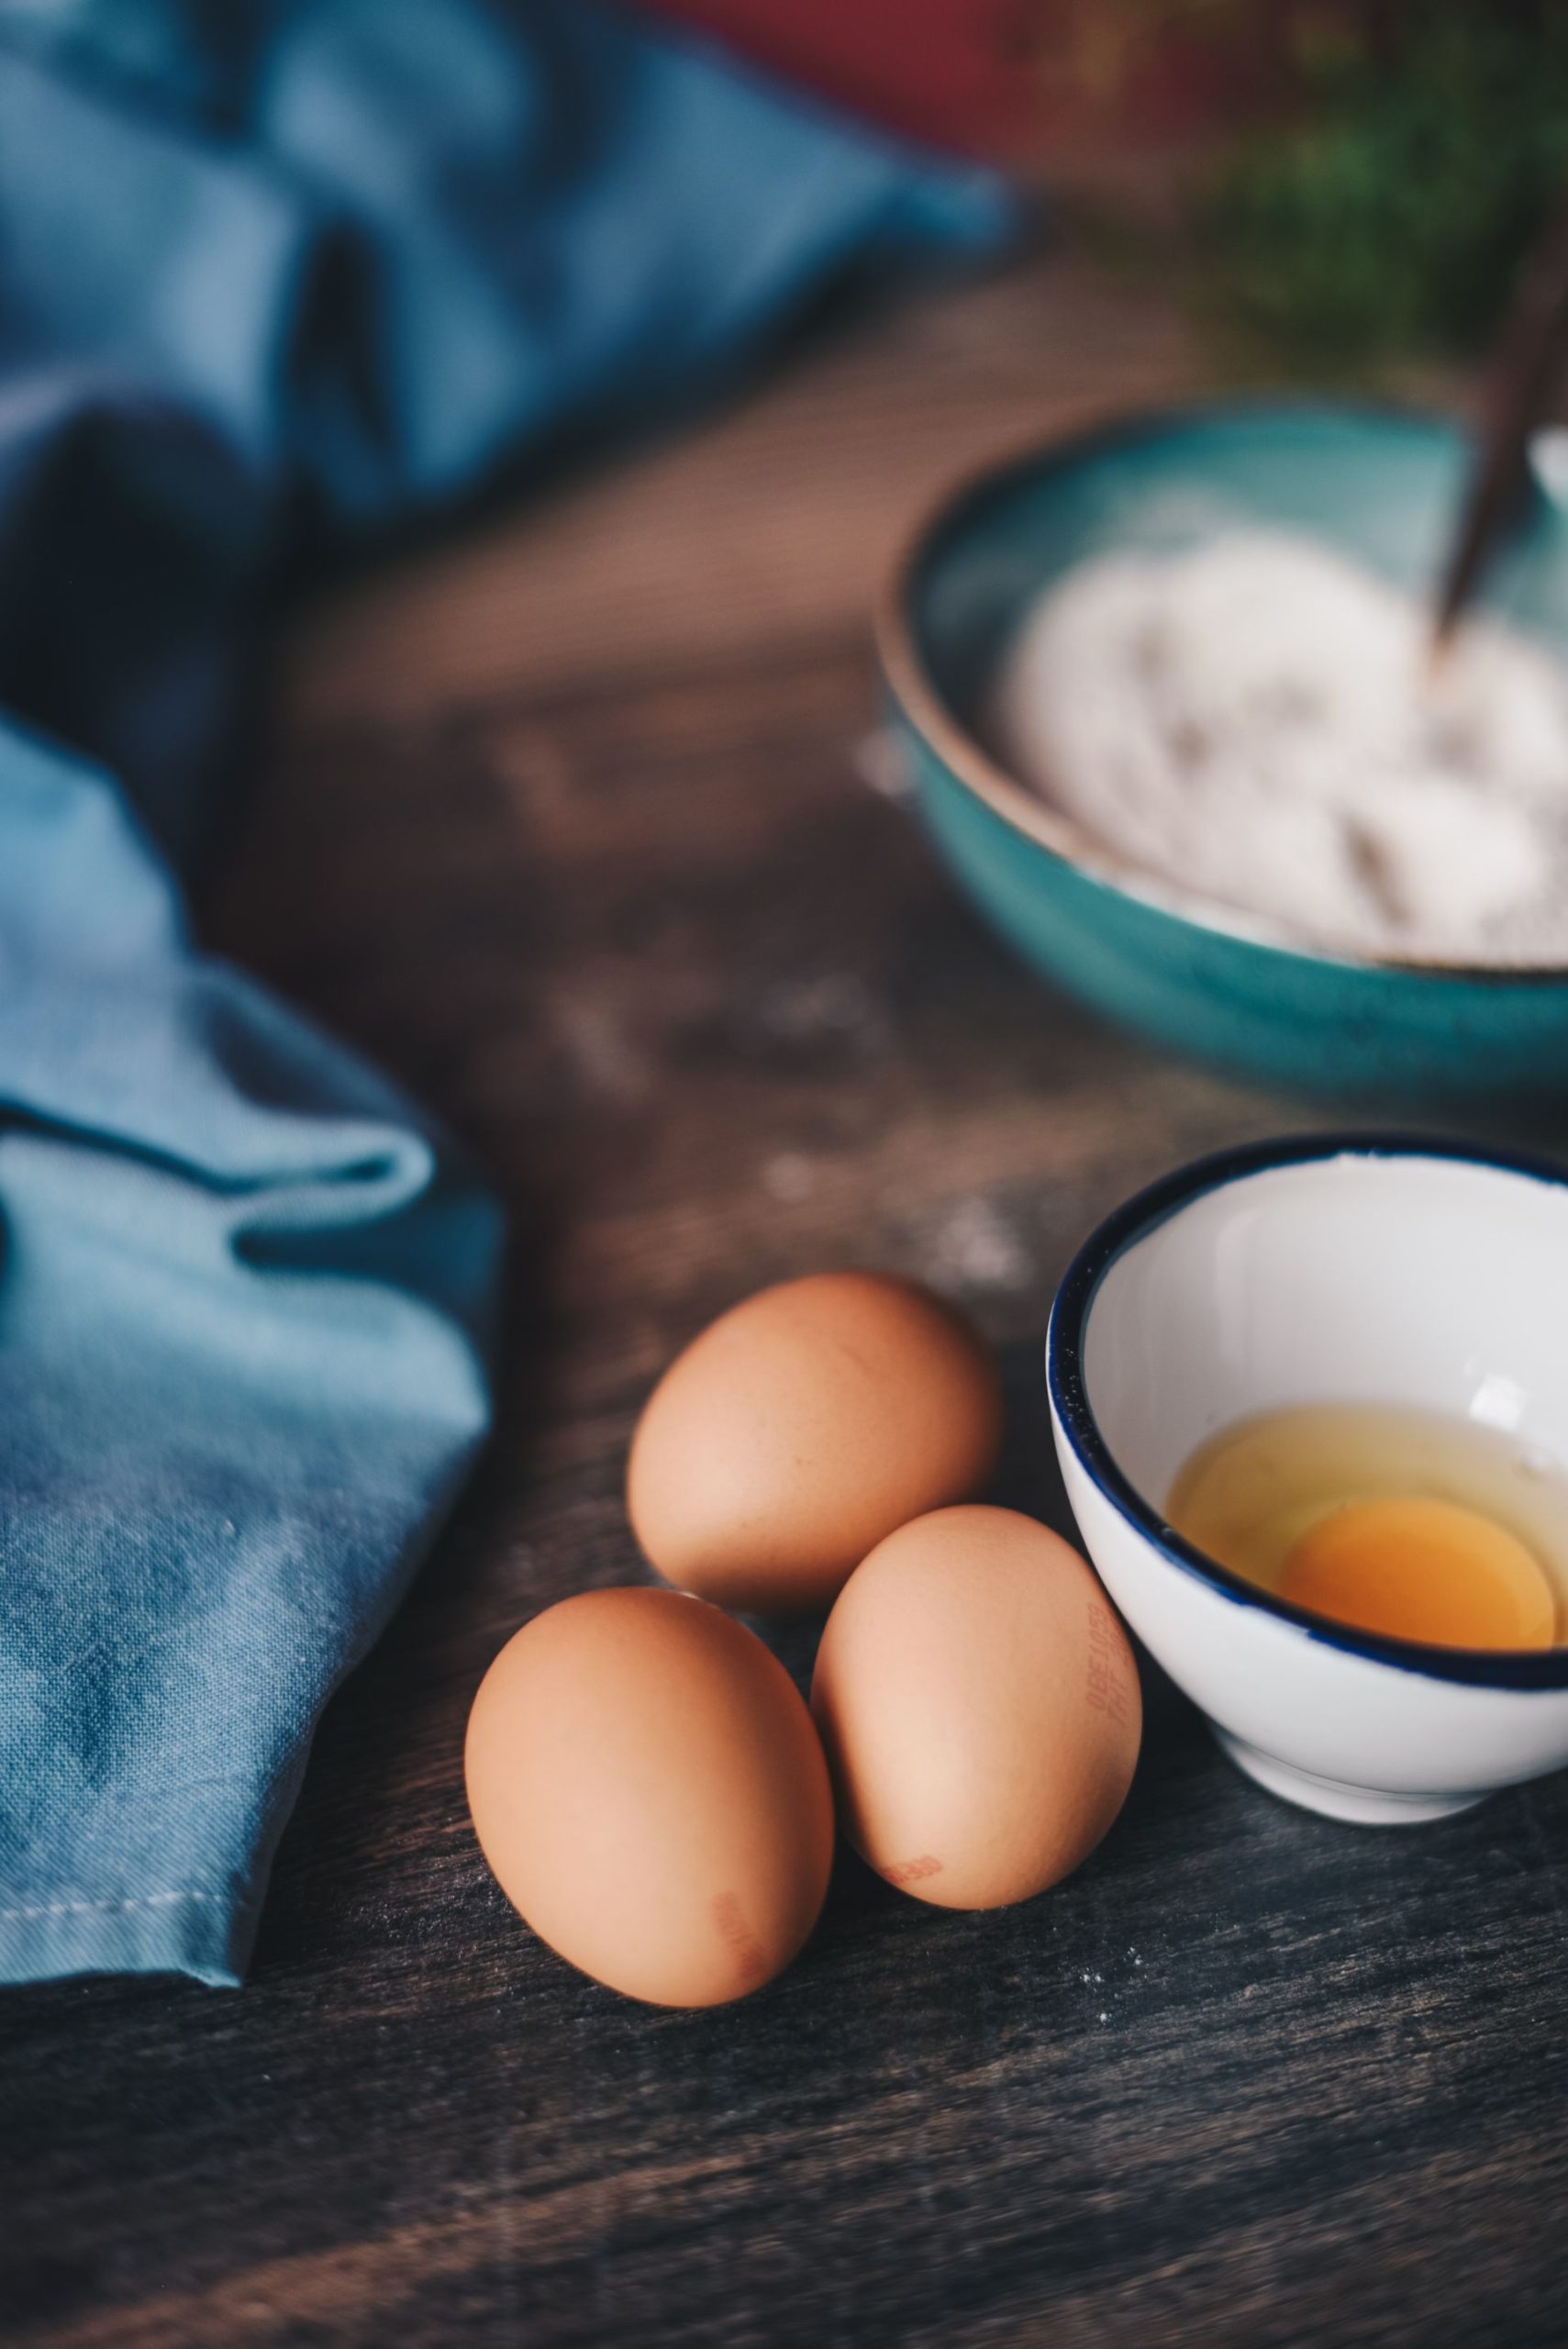 Mẹo chế biến trứng thành bữa ăn ngon và giàu dinh dưỡng - 2